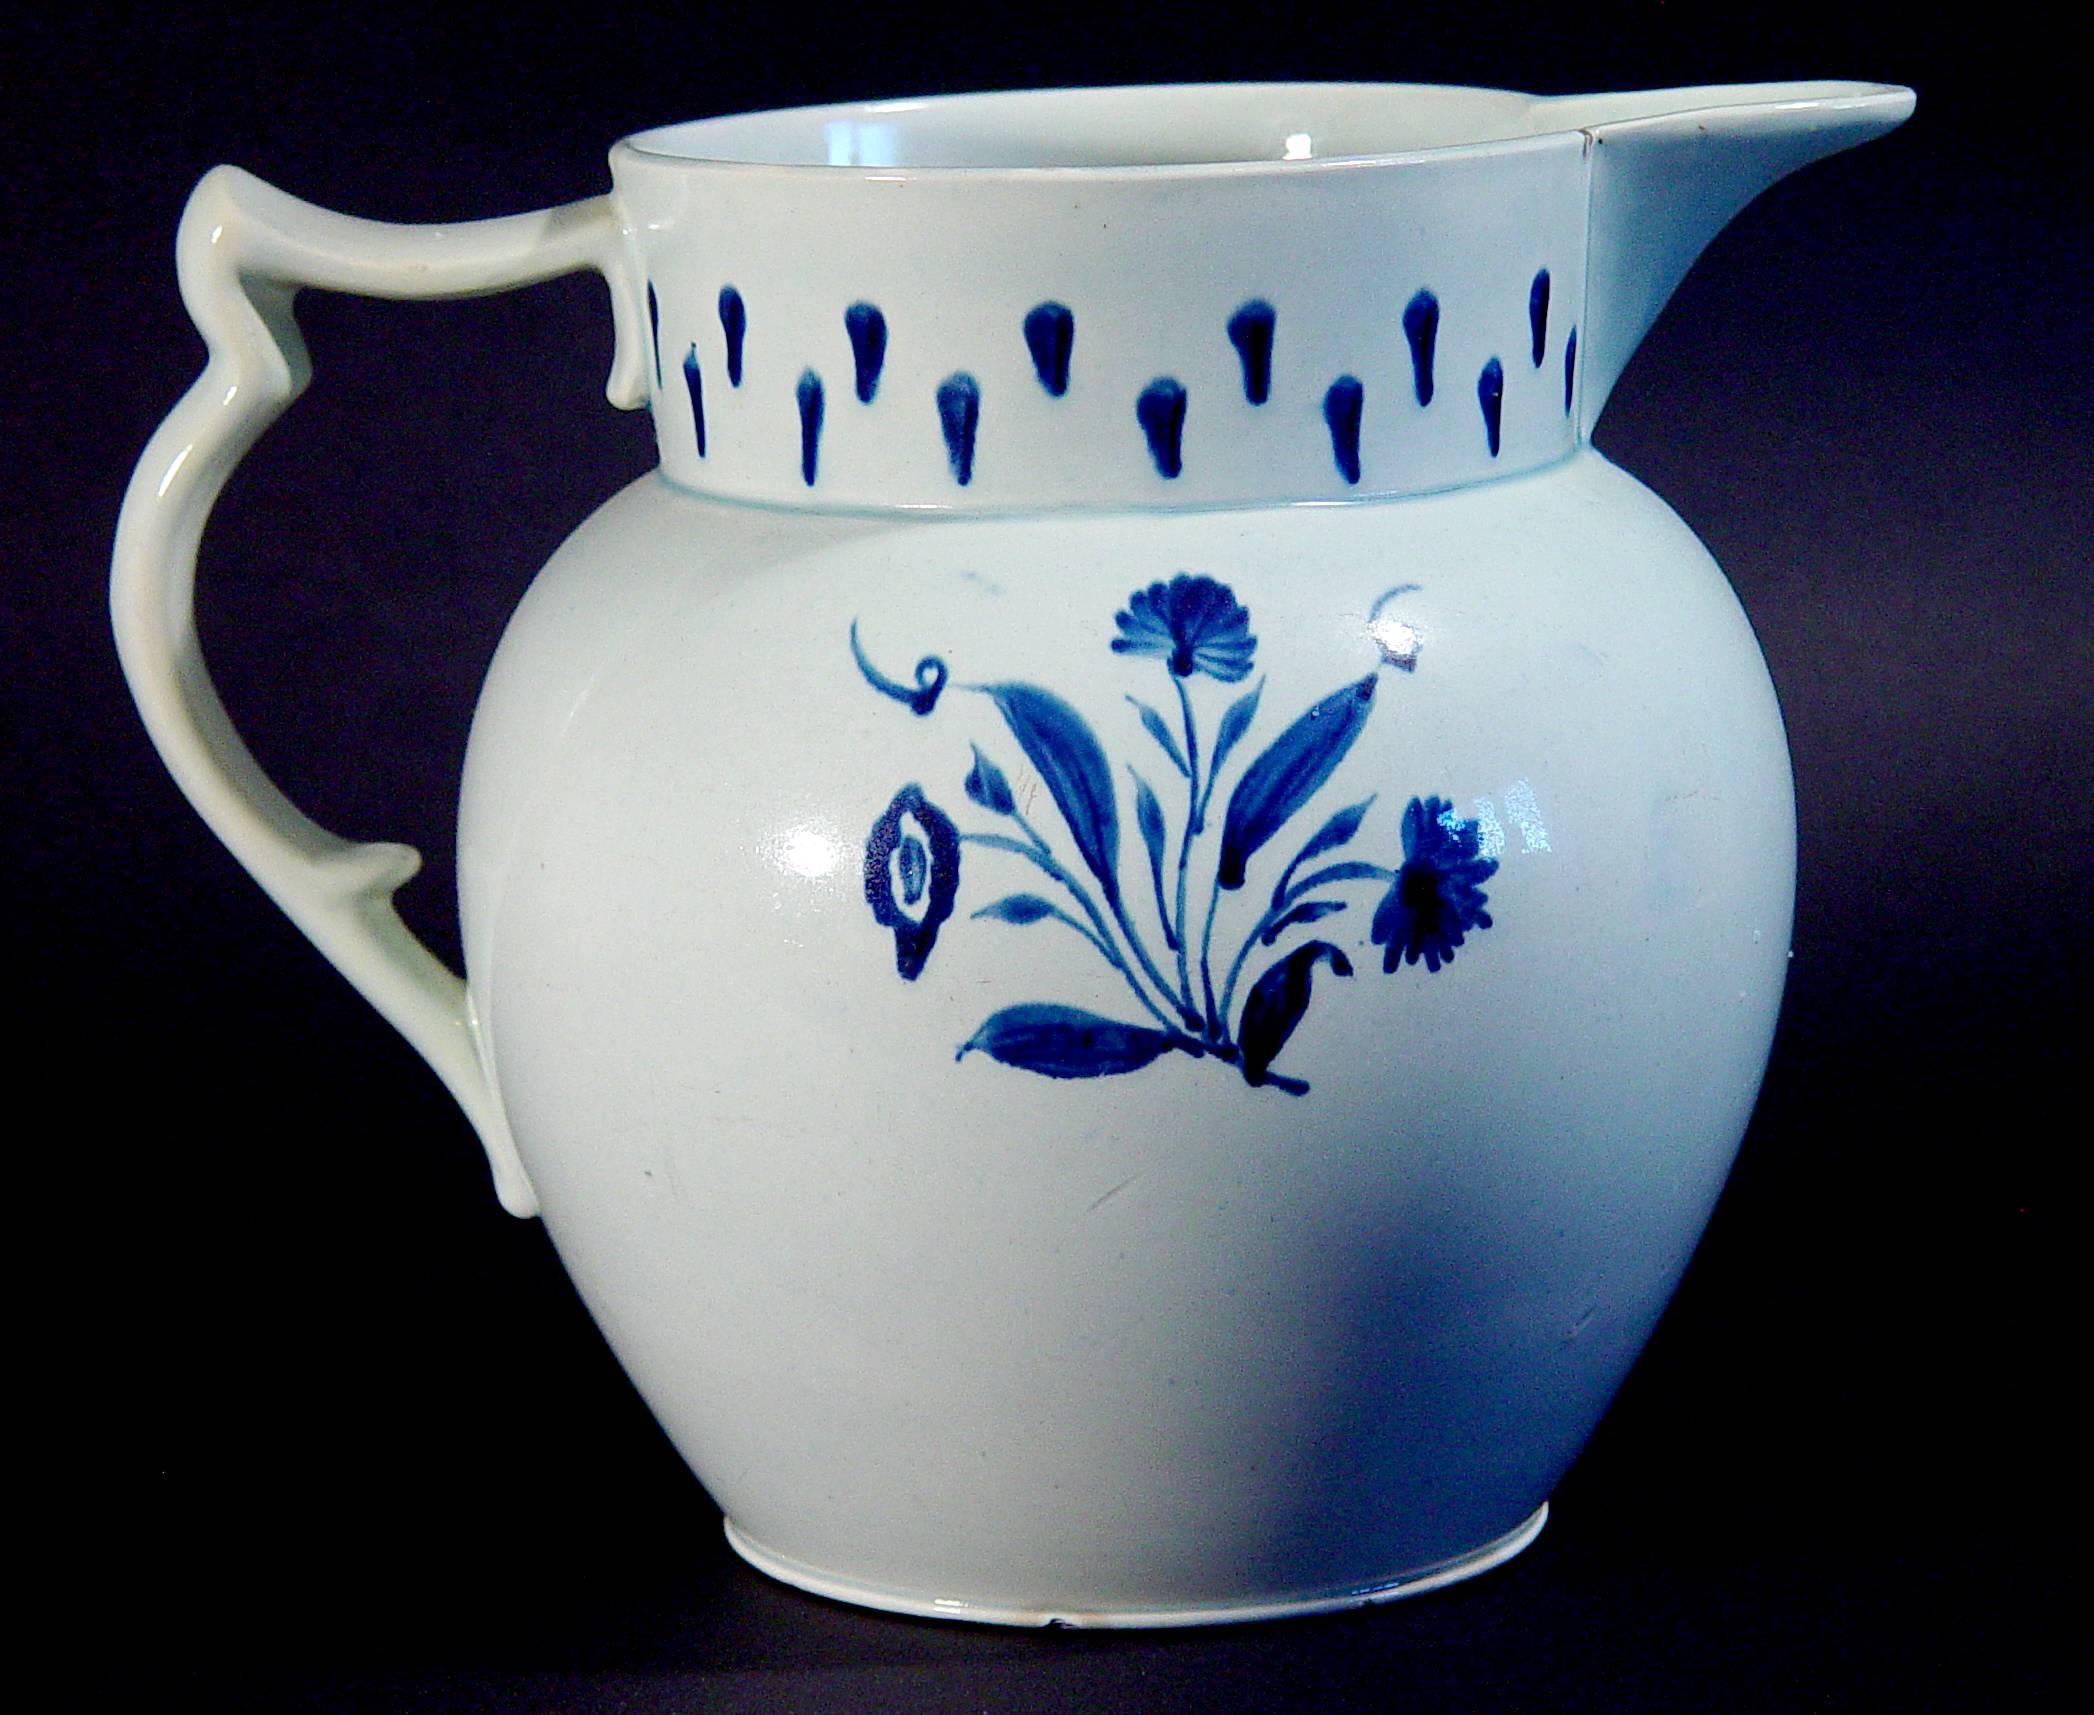 La grande cruche en céramique perlée bleue et blanche sous glaçure est décorée de fleurs d'un côté et d'un simple motif de drapé stylisé moderniste de l'autre.